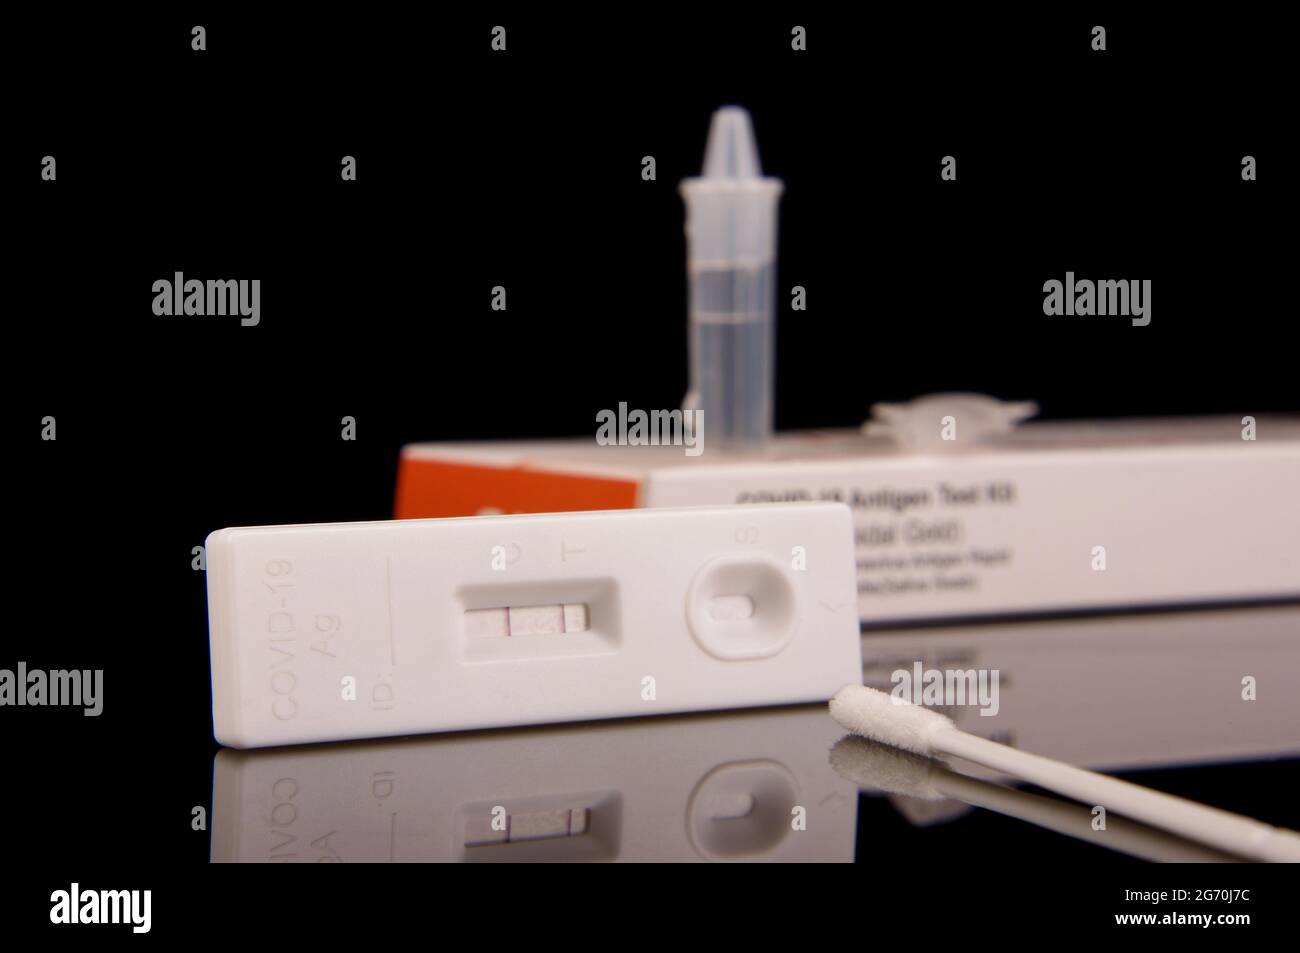 Kit de prueba de antígeno rápido para detección de virus de corona COVID-19 y control de pandemia aislado sobre fondo negro reflectante Foto de stock